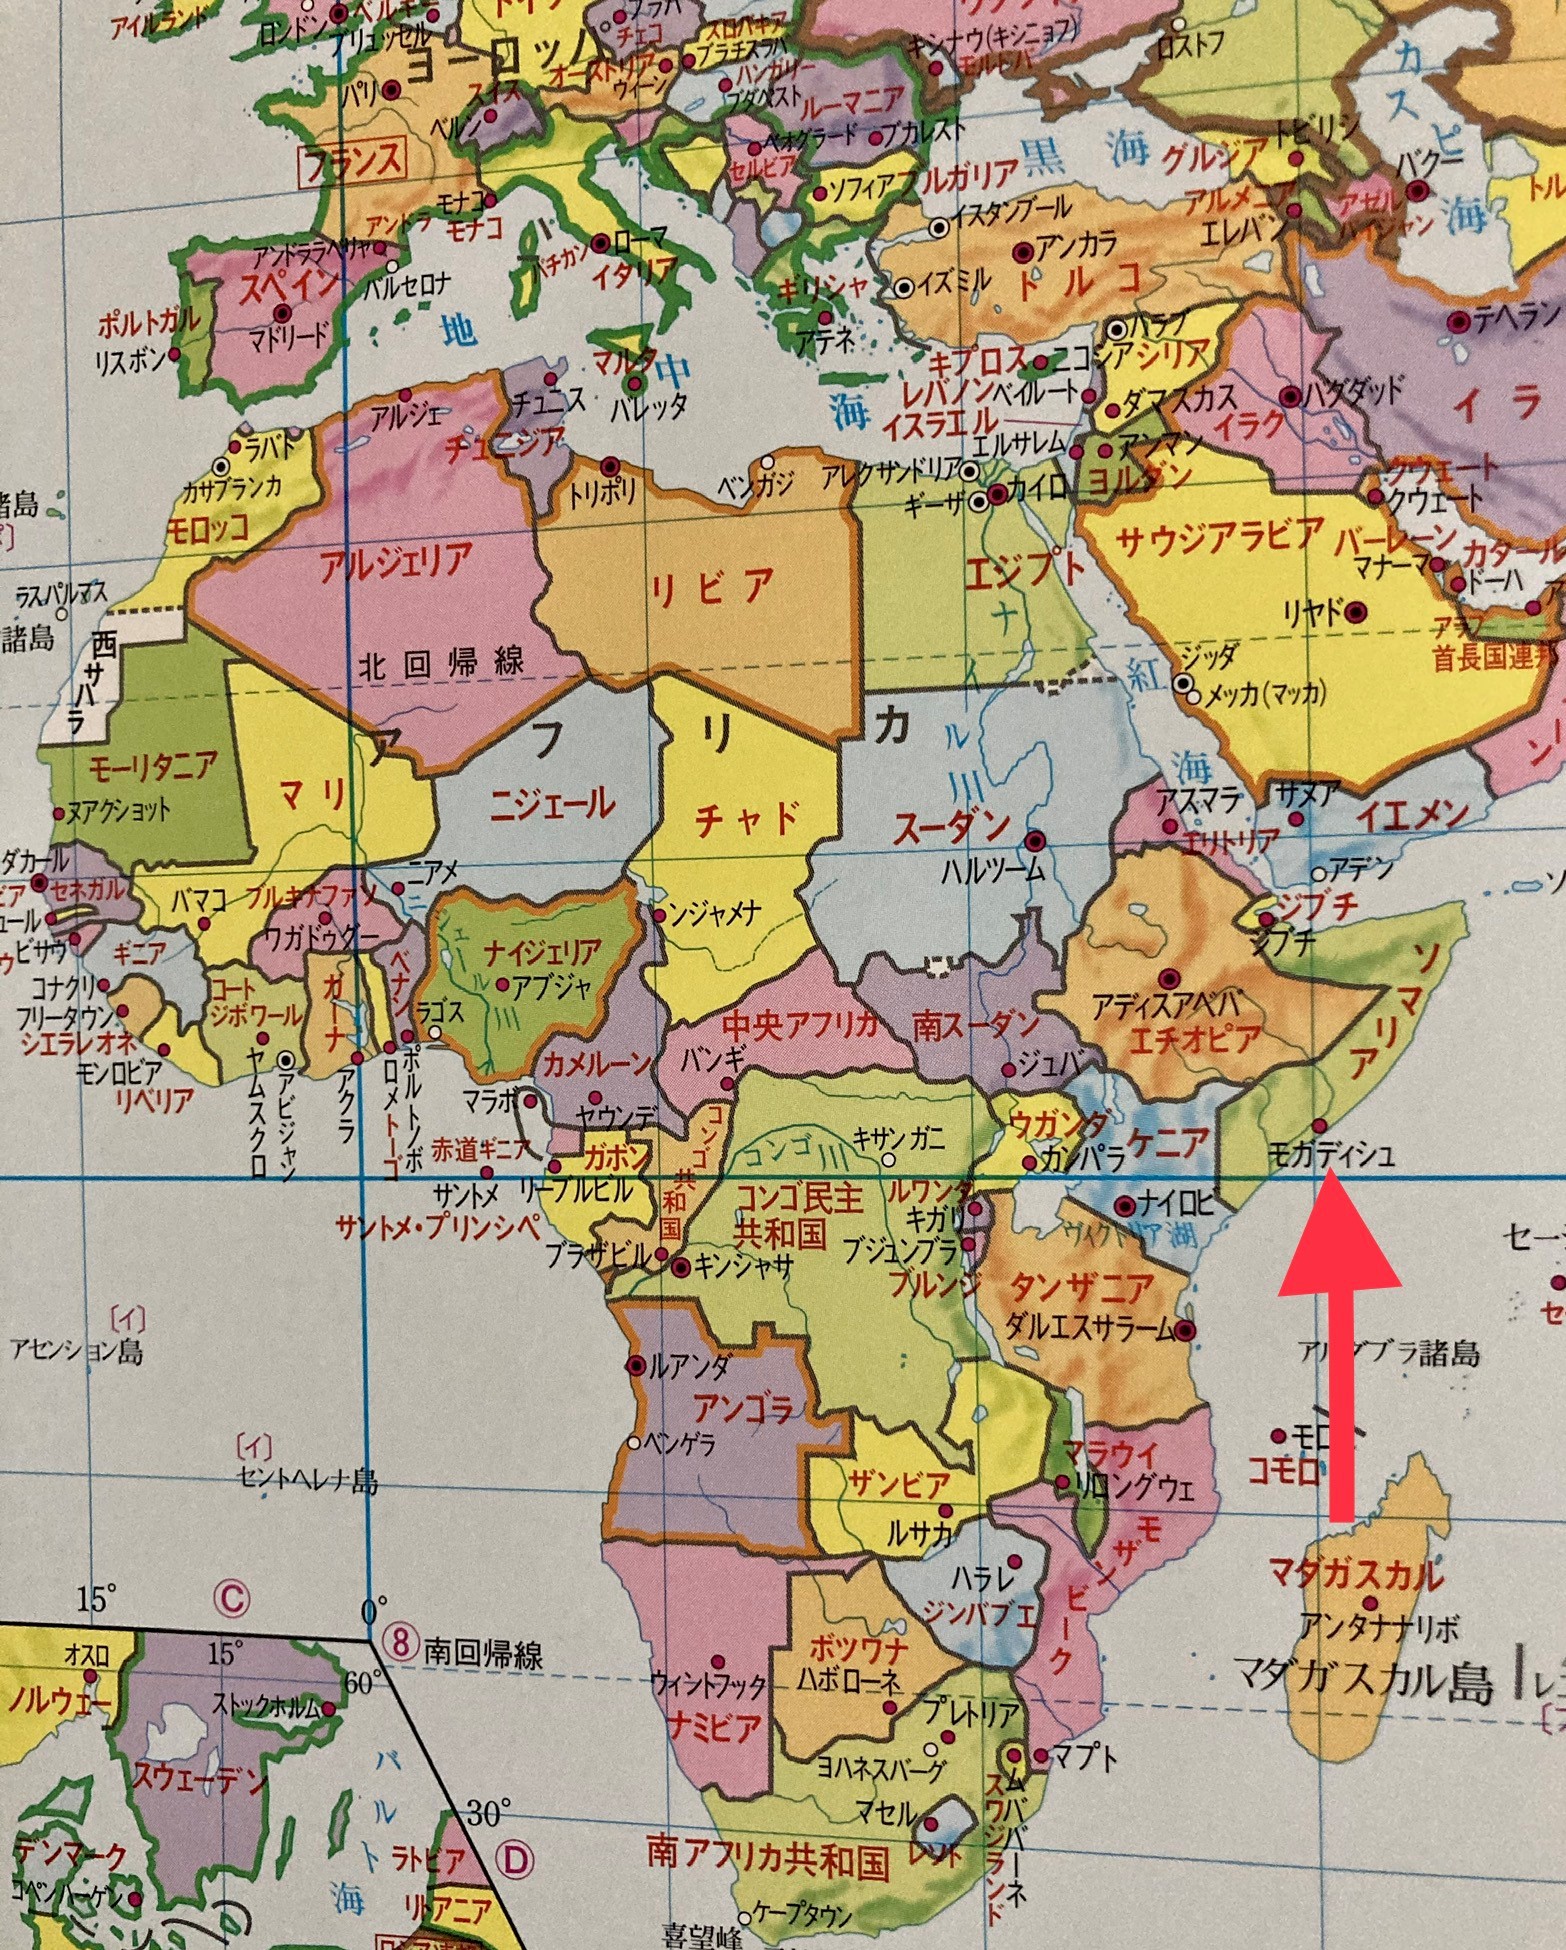 ソマリアとモガディシュの地図①